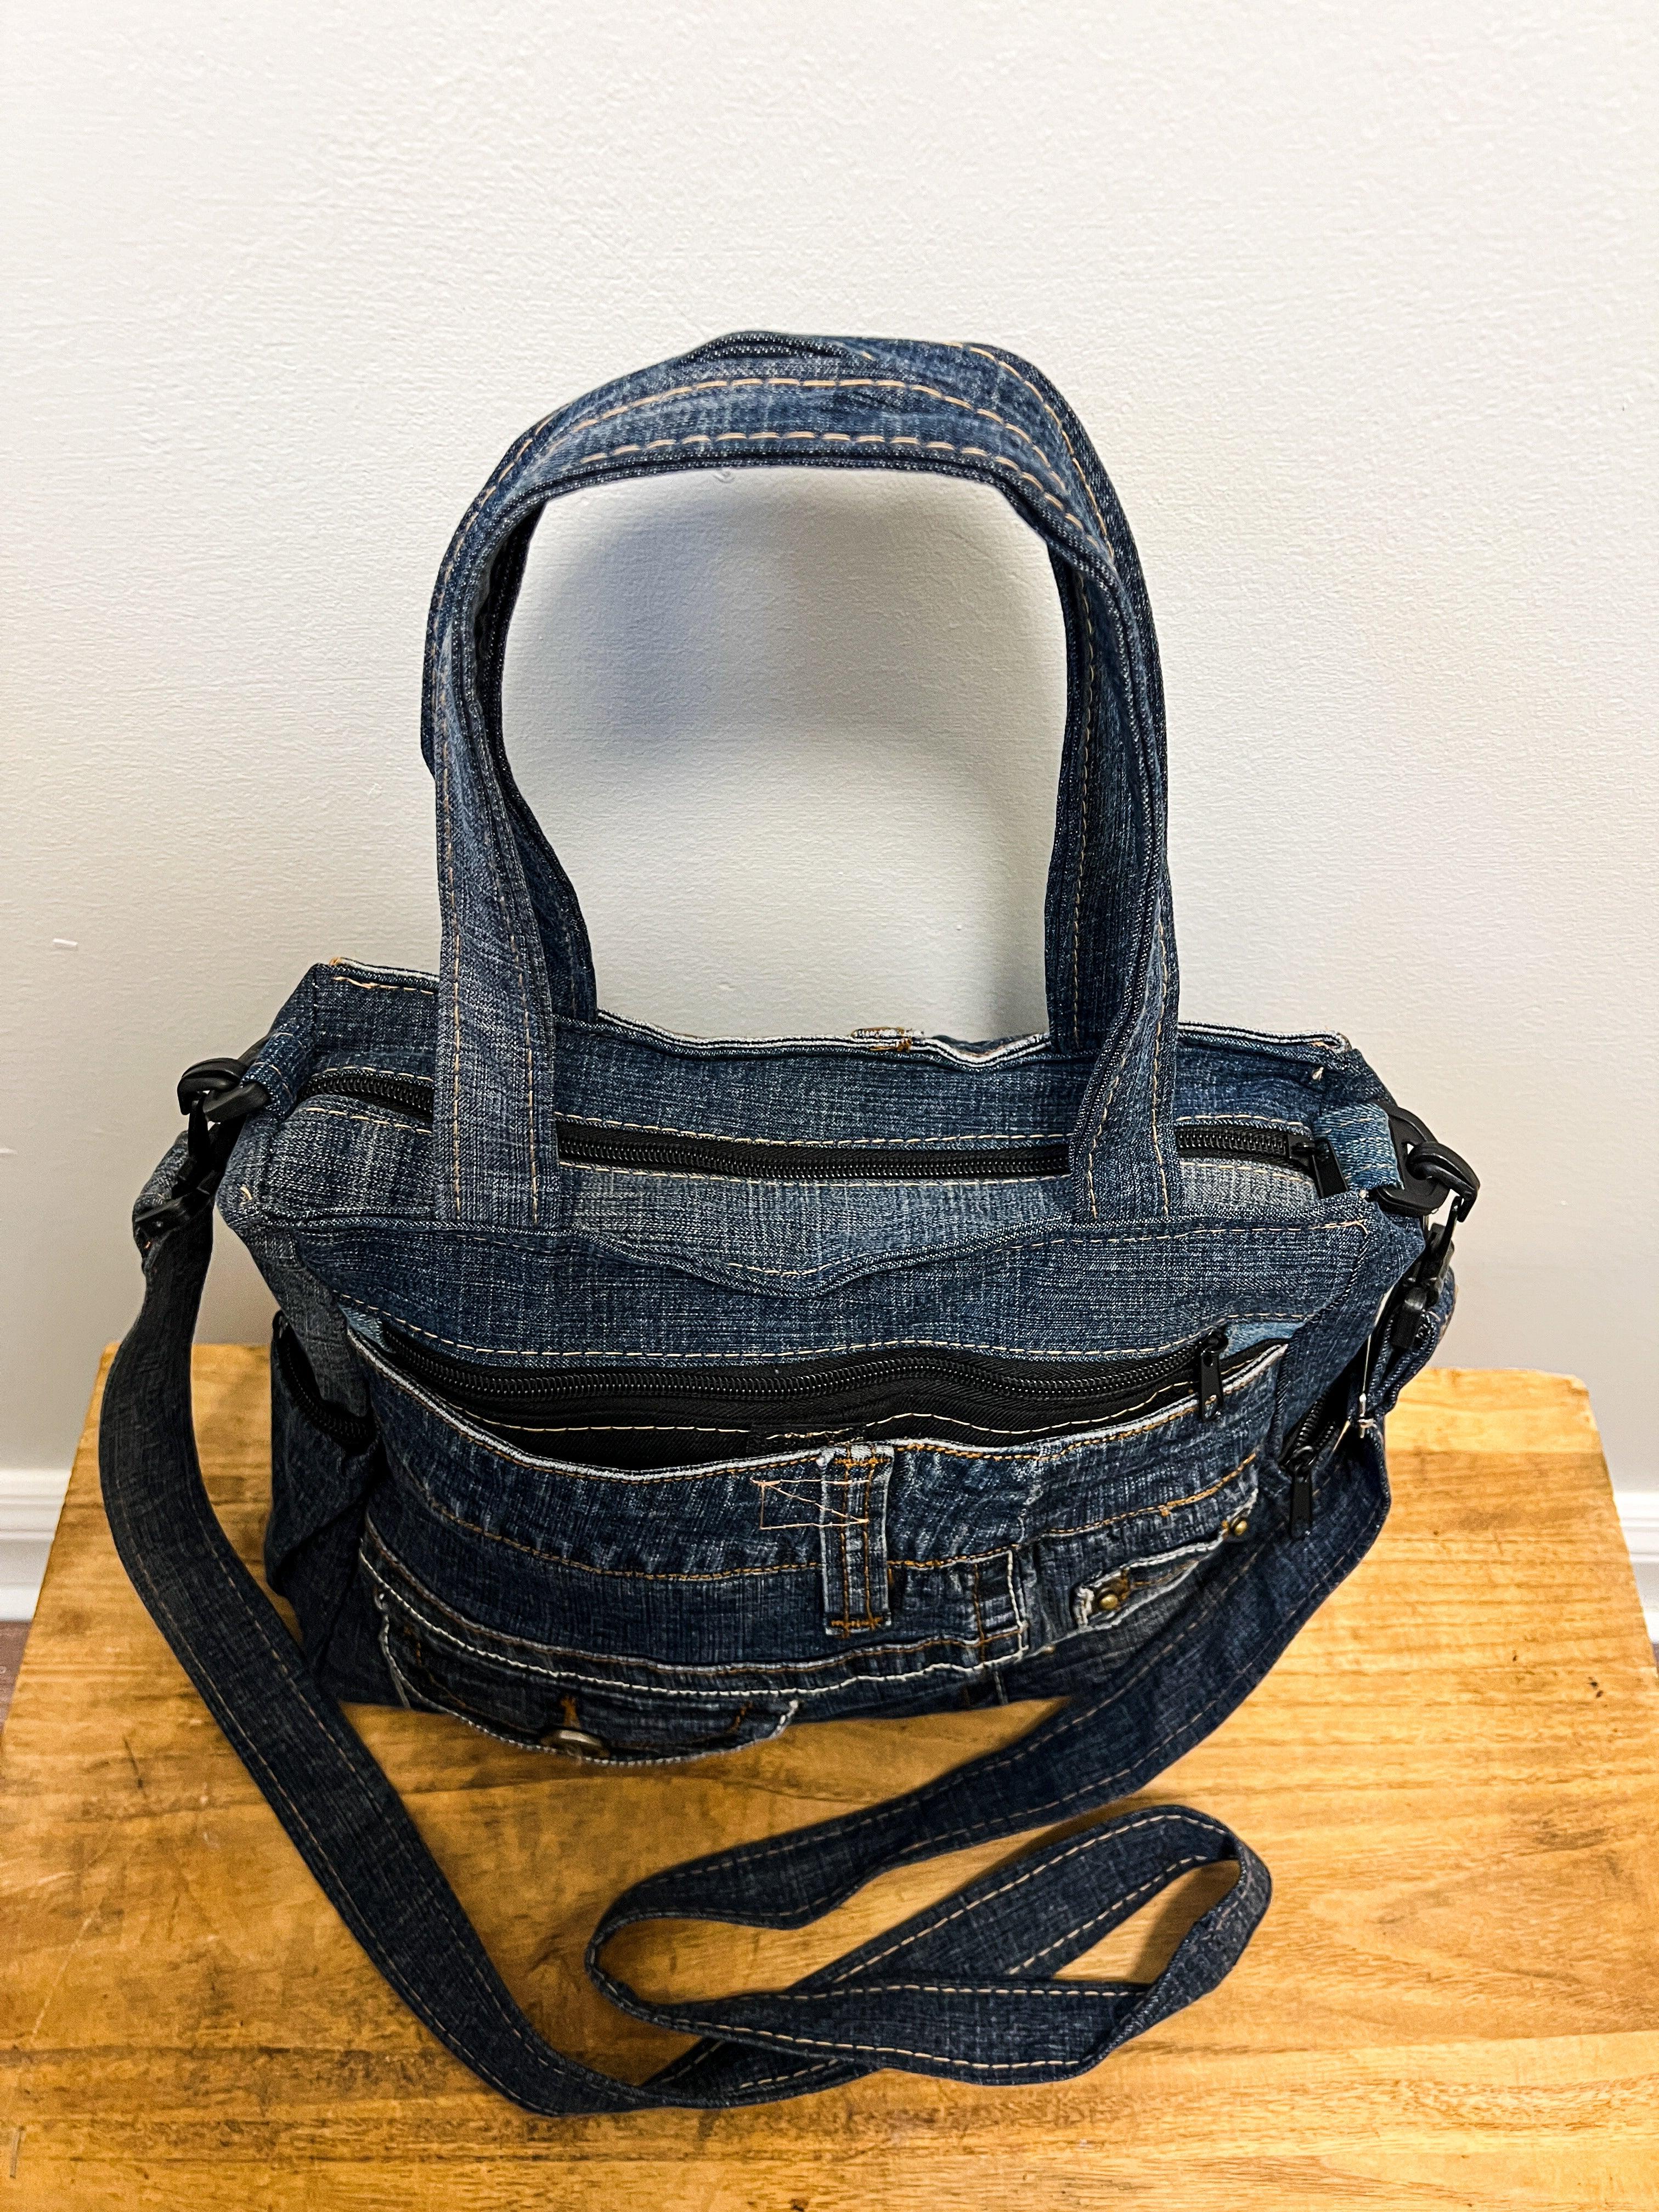 Levis Vintage Upcycled Blue Jeans Denim Purse Tote Bag Handbag with Bling |  eBay